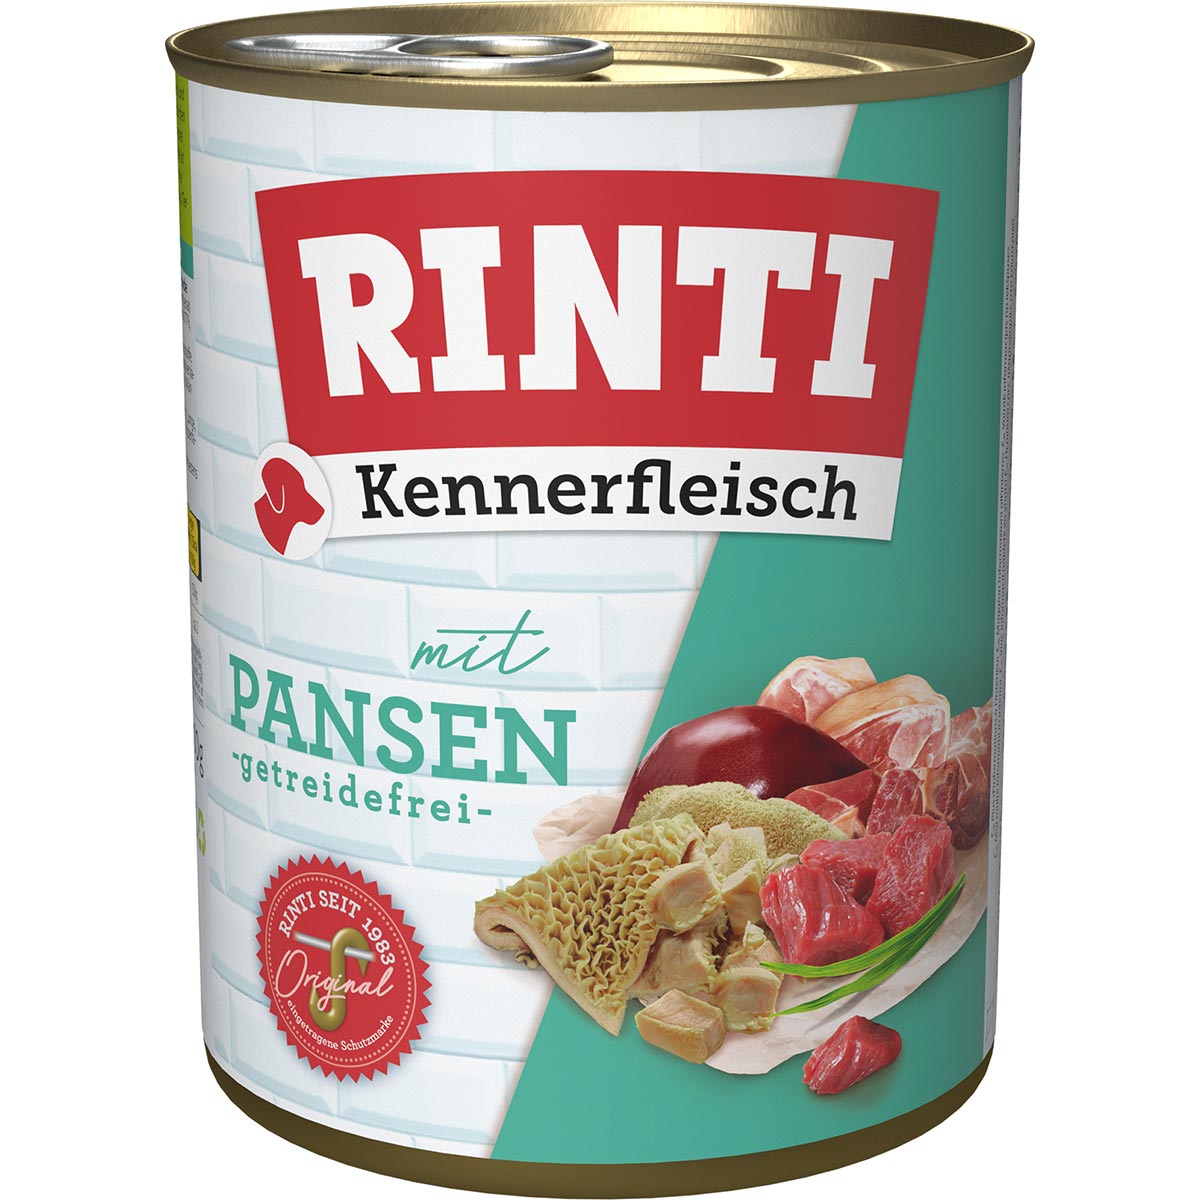 Rinti Kennerfleisch Pansen 12x800g von Rinti